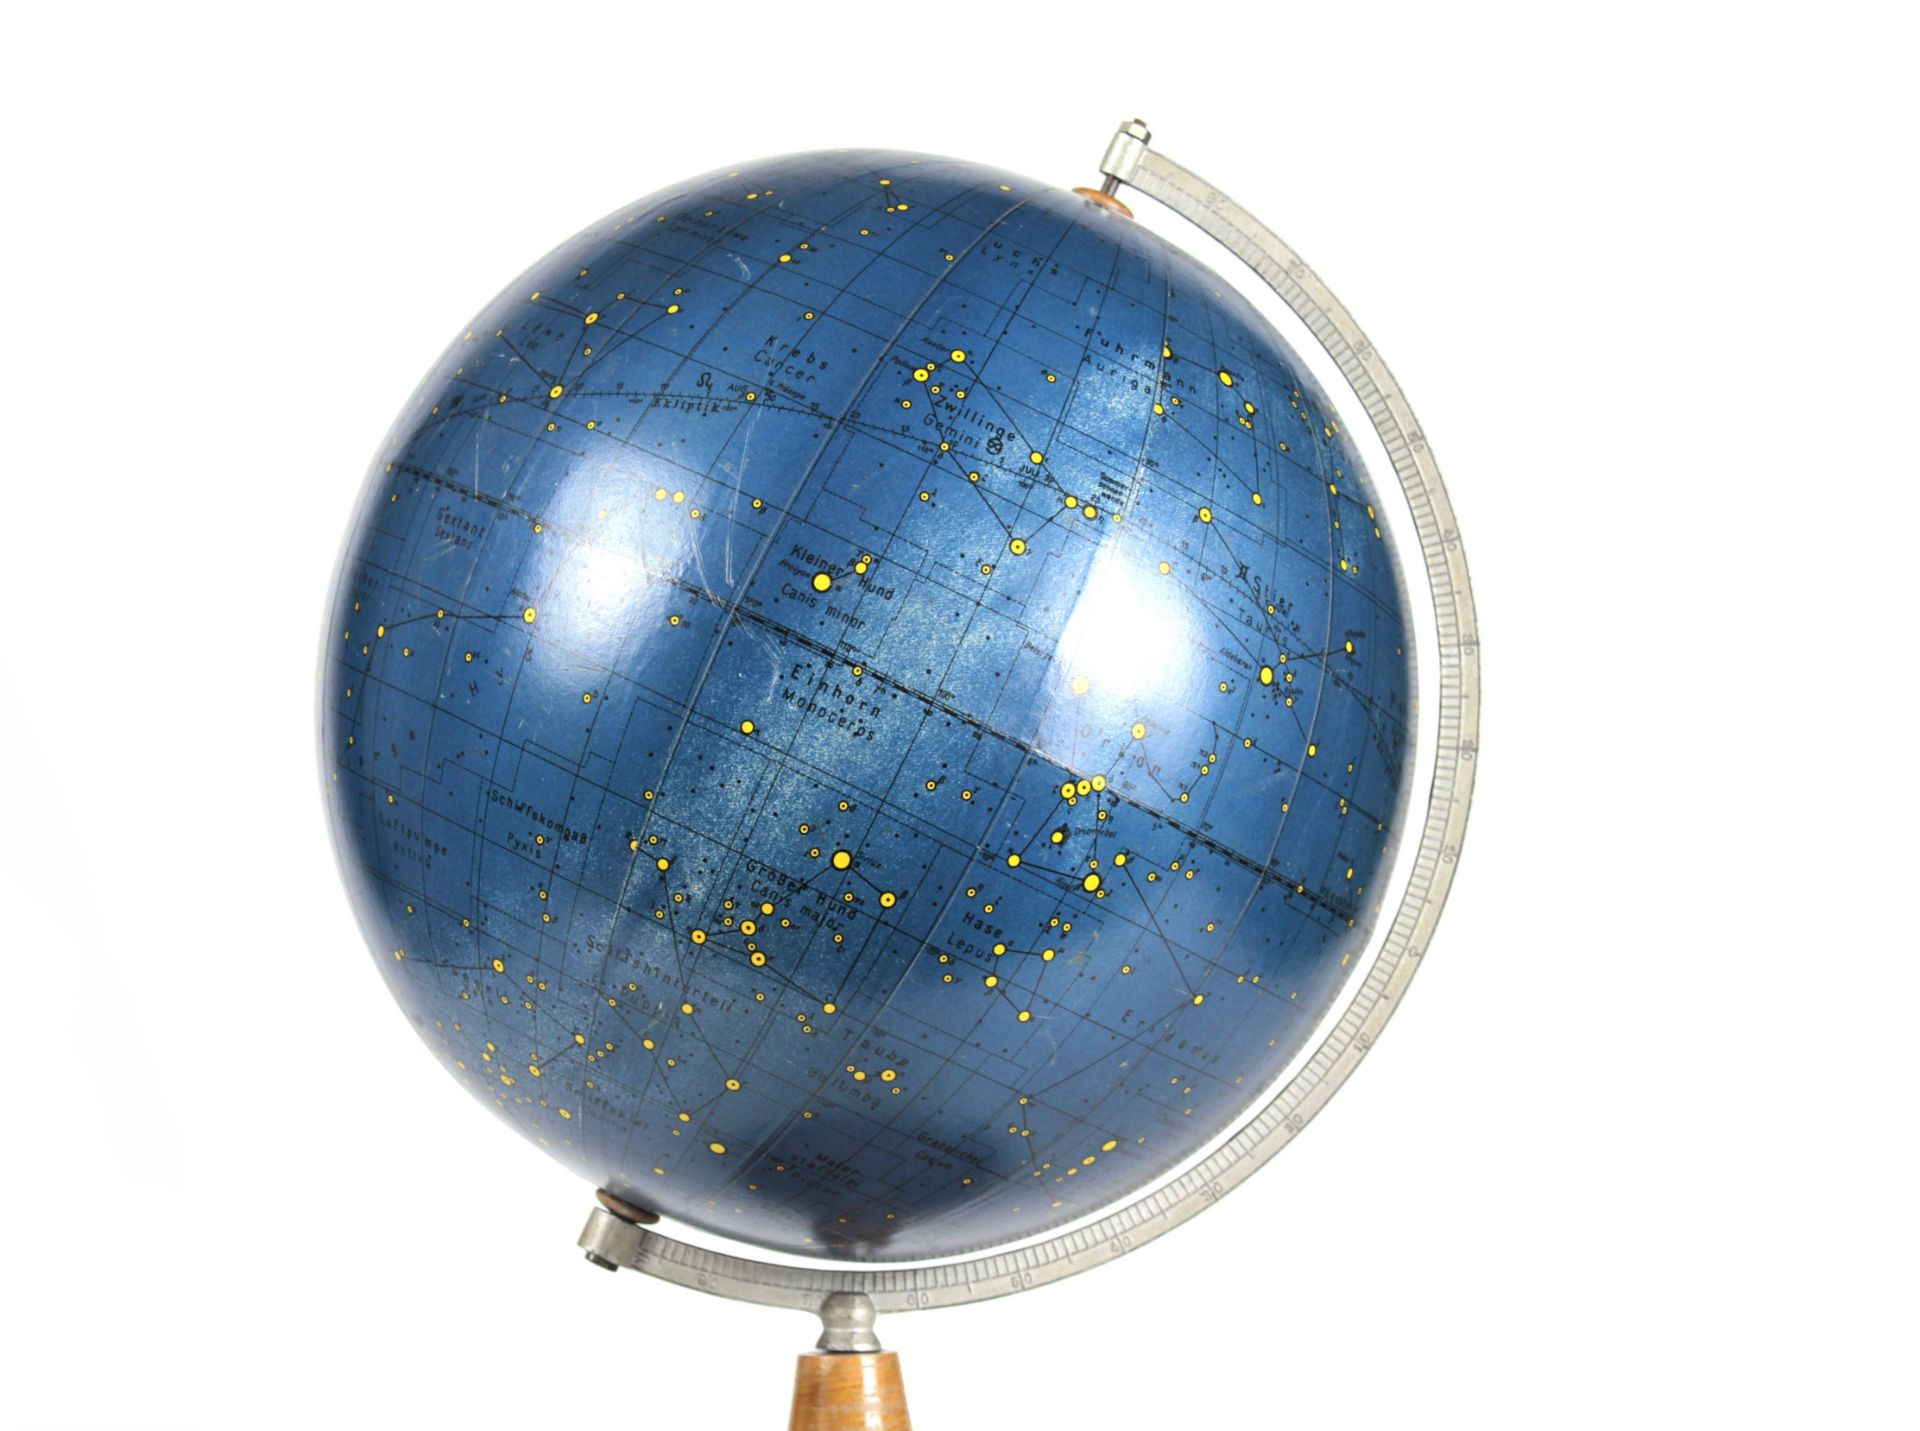 Himmelsglobus von Prof. Dr. A. Krause - Bild 4 aus 5